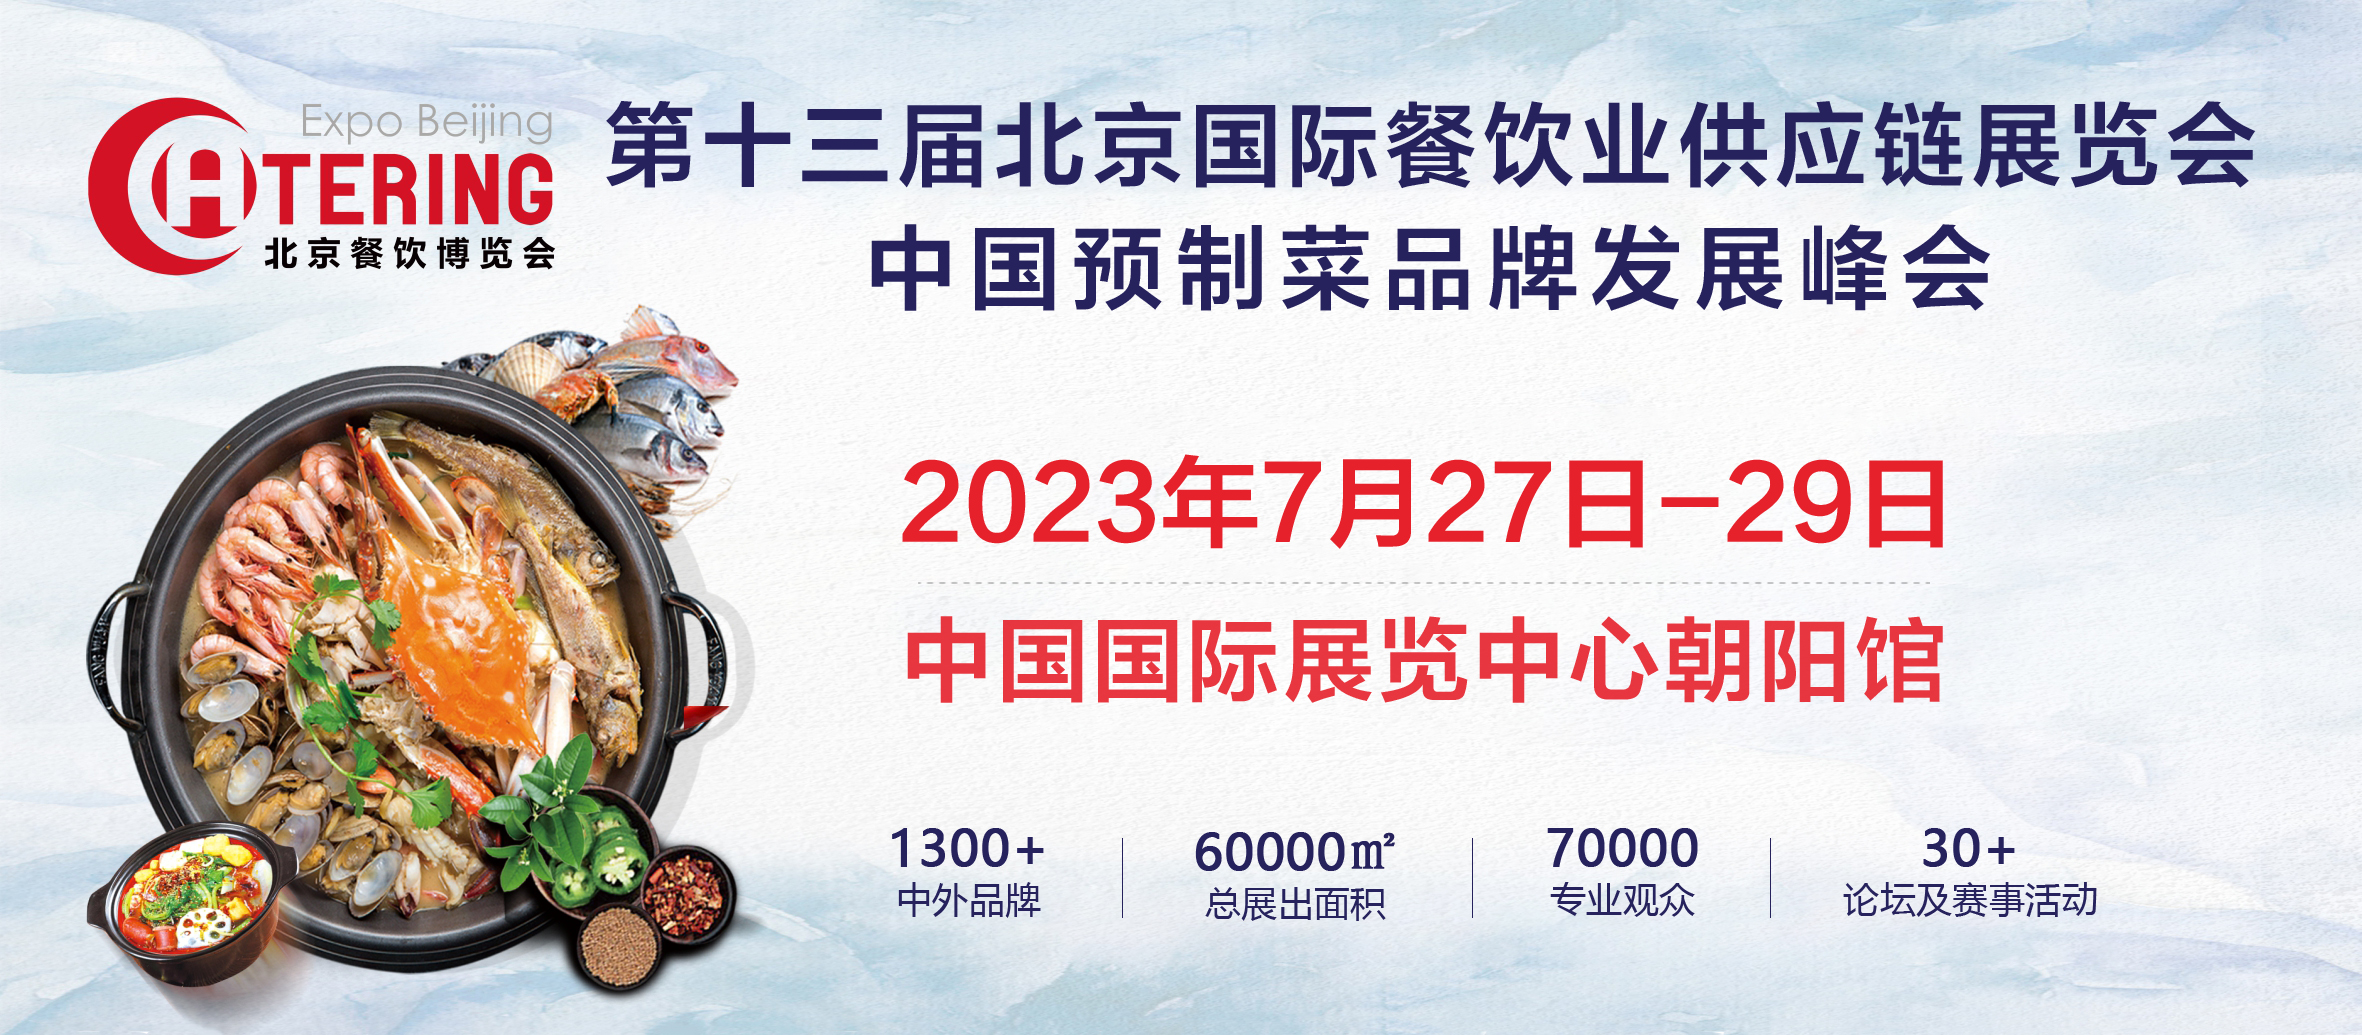 展商推介丨青岛帮厨食品有限公司将携新产品亮相2023北京餐博会(图1)